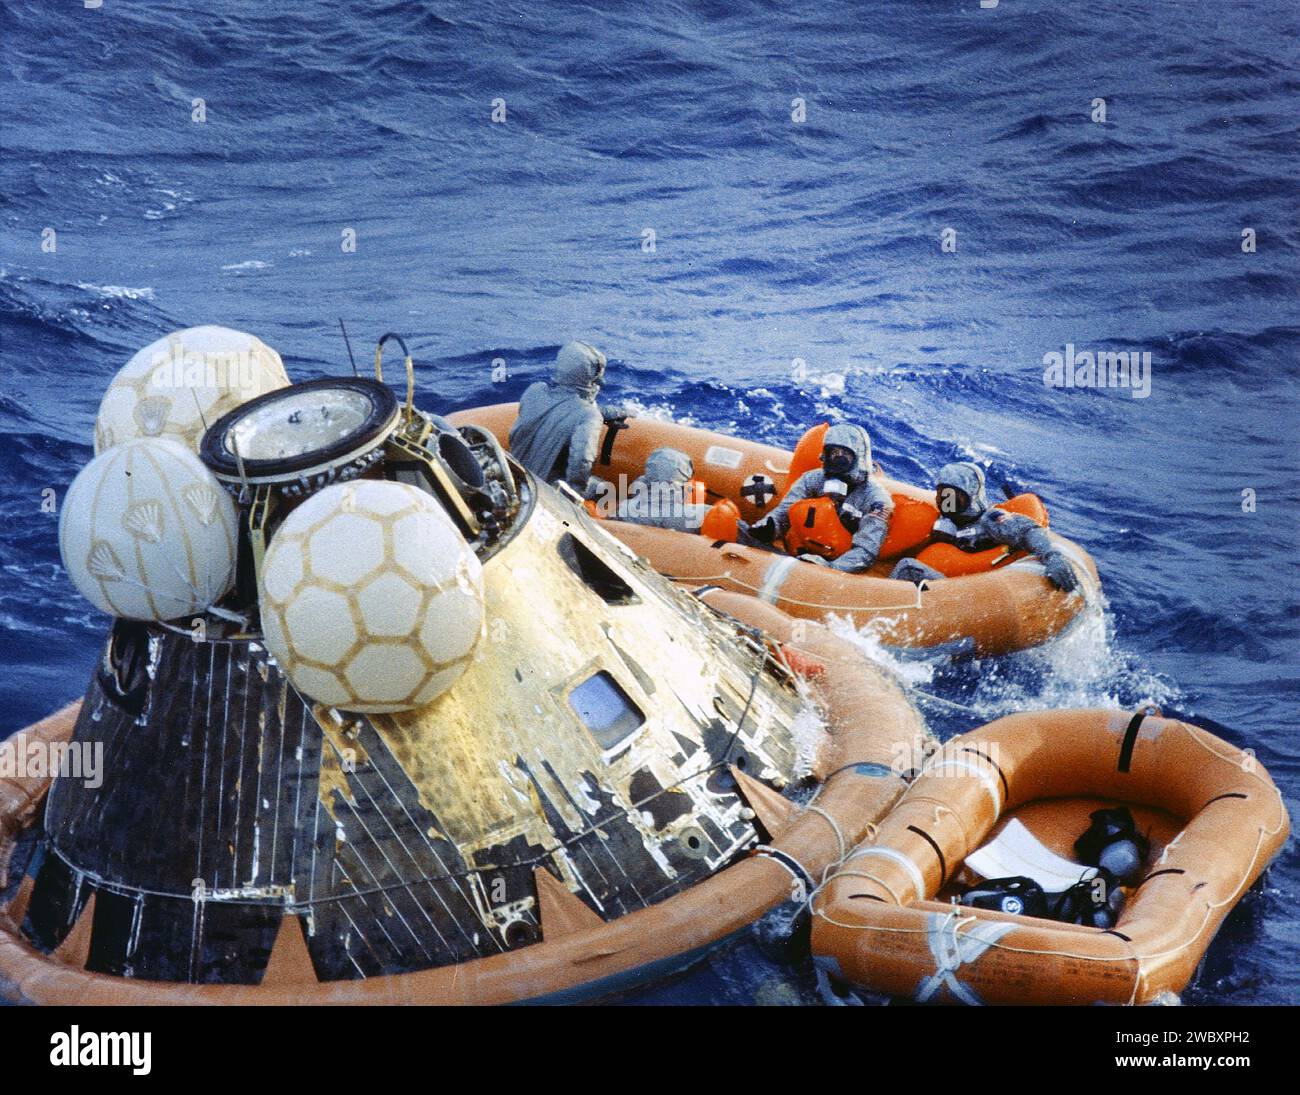 Gli astronauti americani Edwin E. Aldrin, Neil A. Armstrong e Michael Collins in una zattera di decontaminazione durante l'operazione di recupero del modulo di comando Columbia dopo il successo della missione Apollo 11, la prima missione lunare con equipaggio, Oceano Pacifico, NASA, 24 luglio 1969 Foto Stock